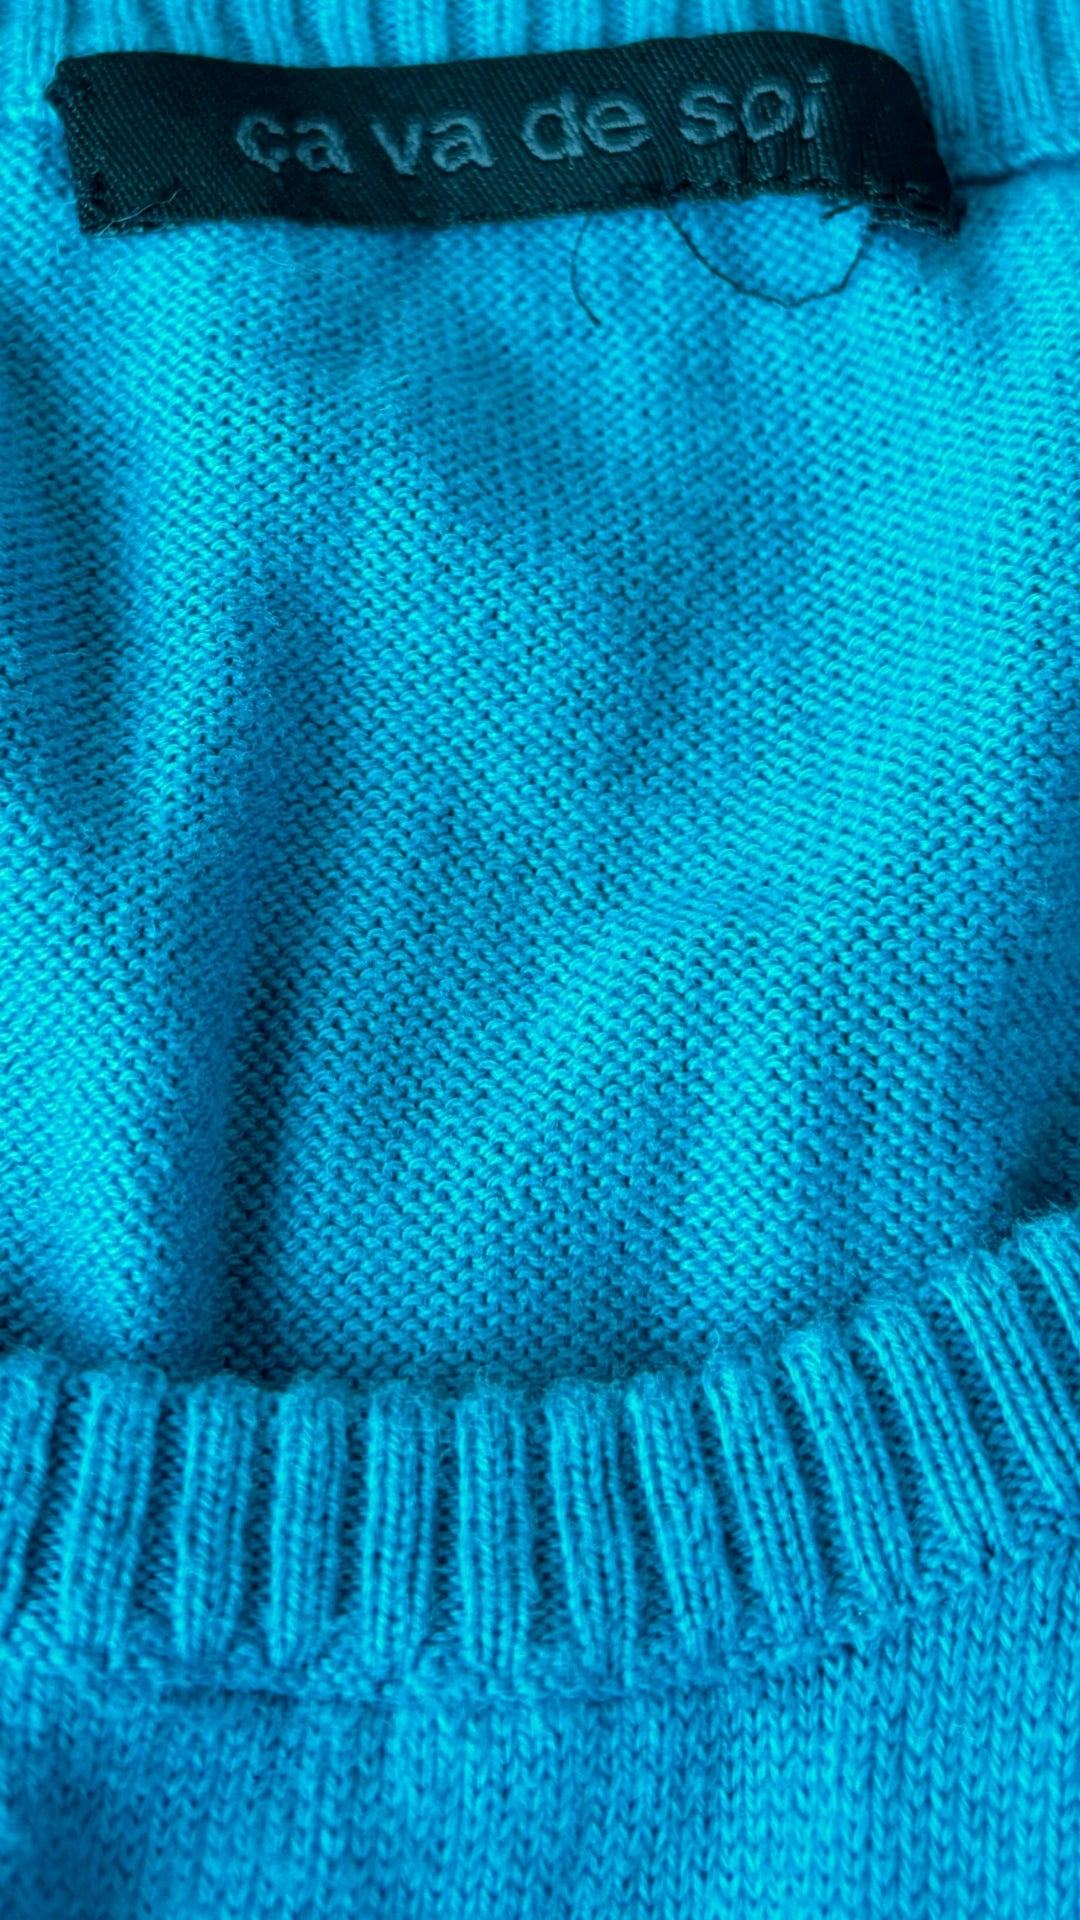 Chandail en fin tricot de coton egyptien Ca va de soi, taille estimée xs. Vue de l'étiquette de marque.